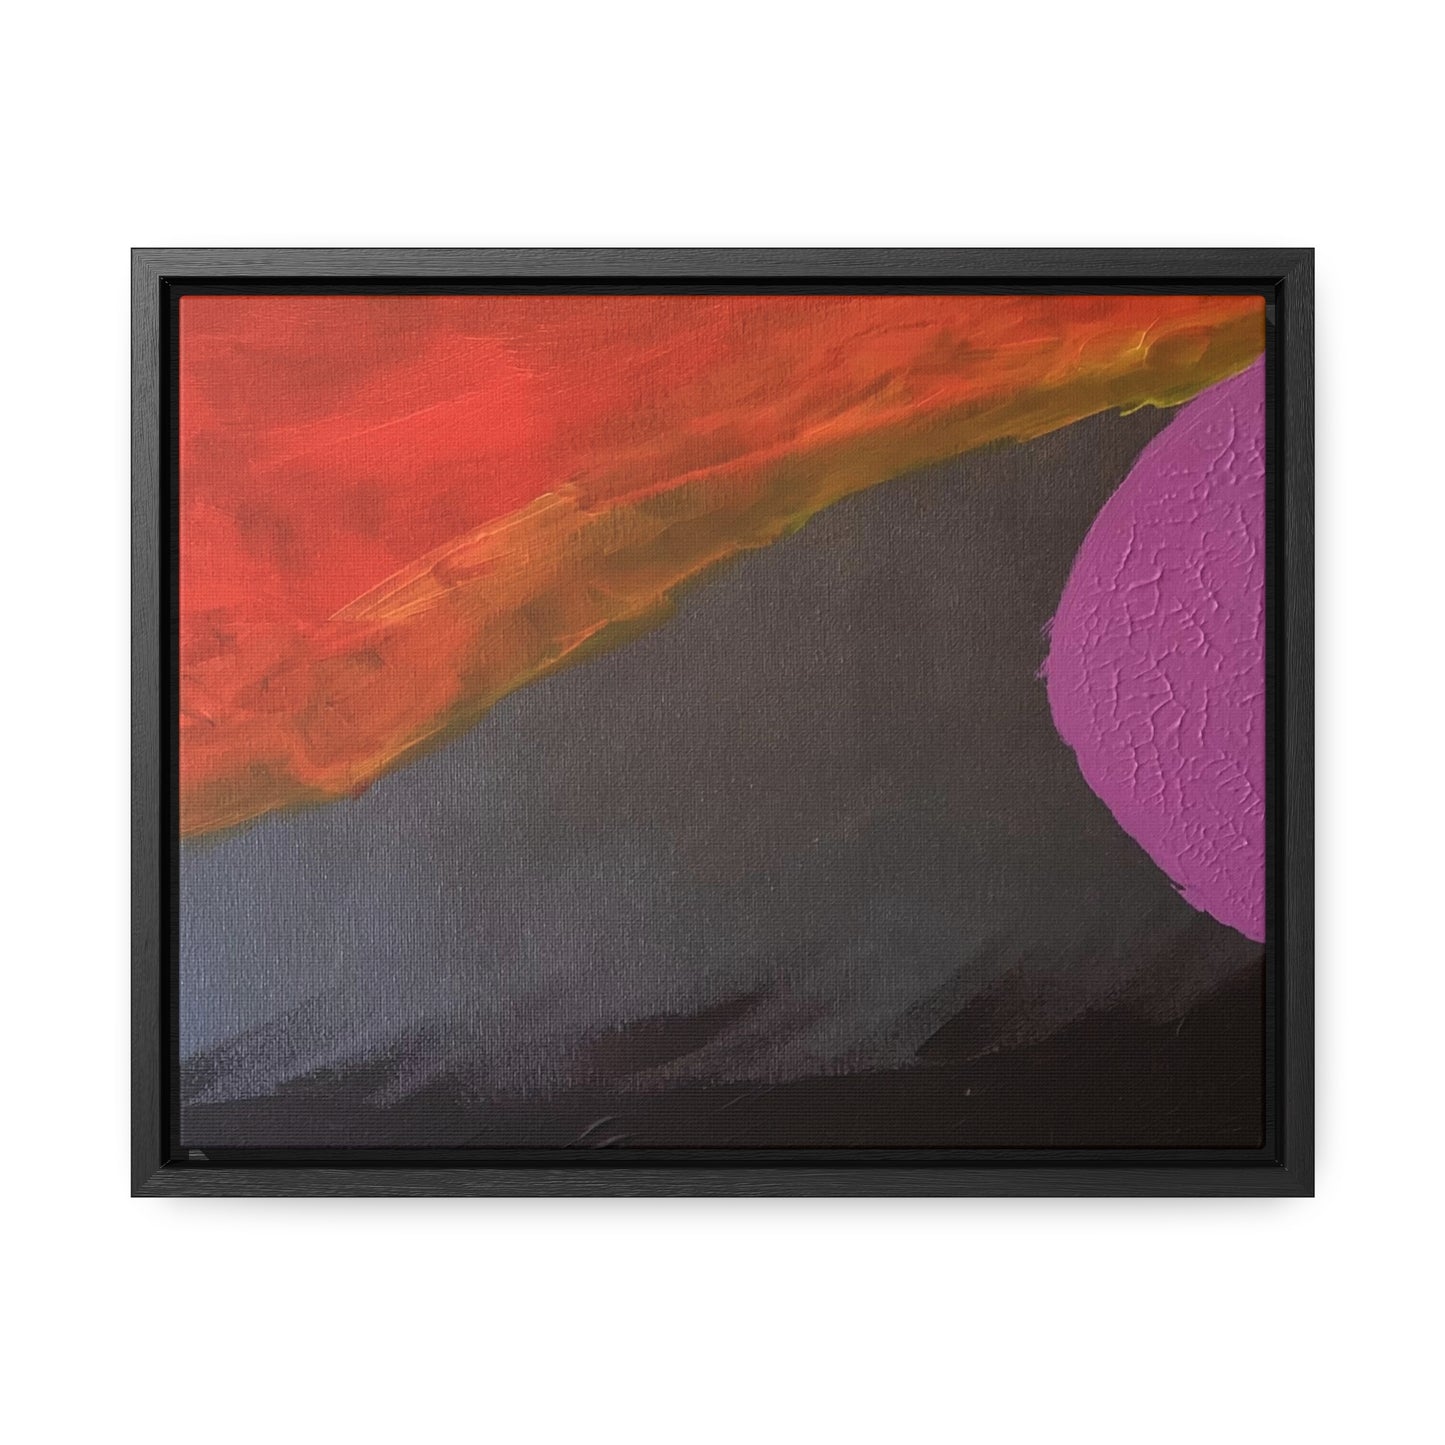 Sunset series #3 purple moon